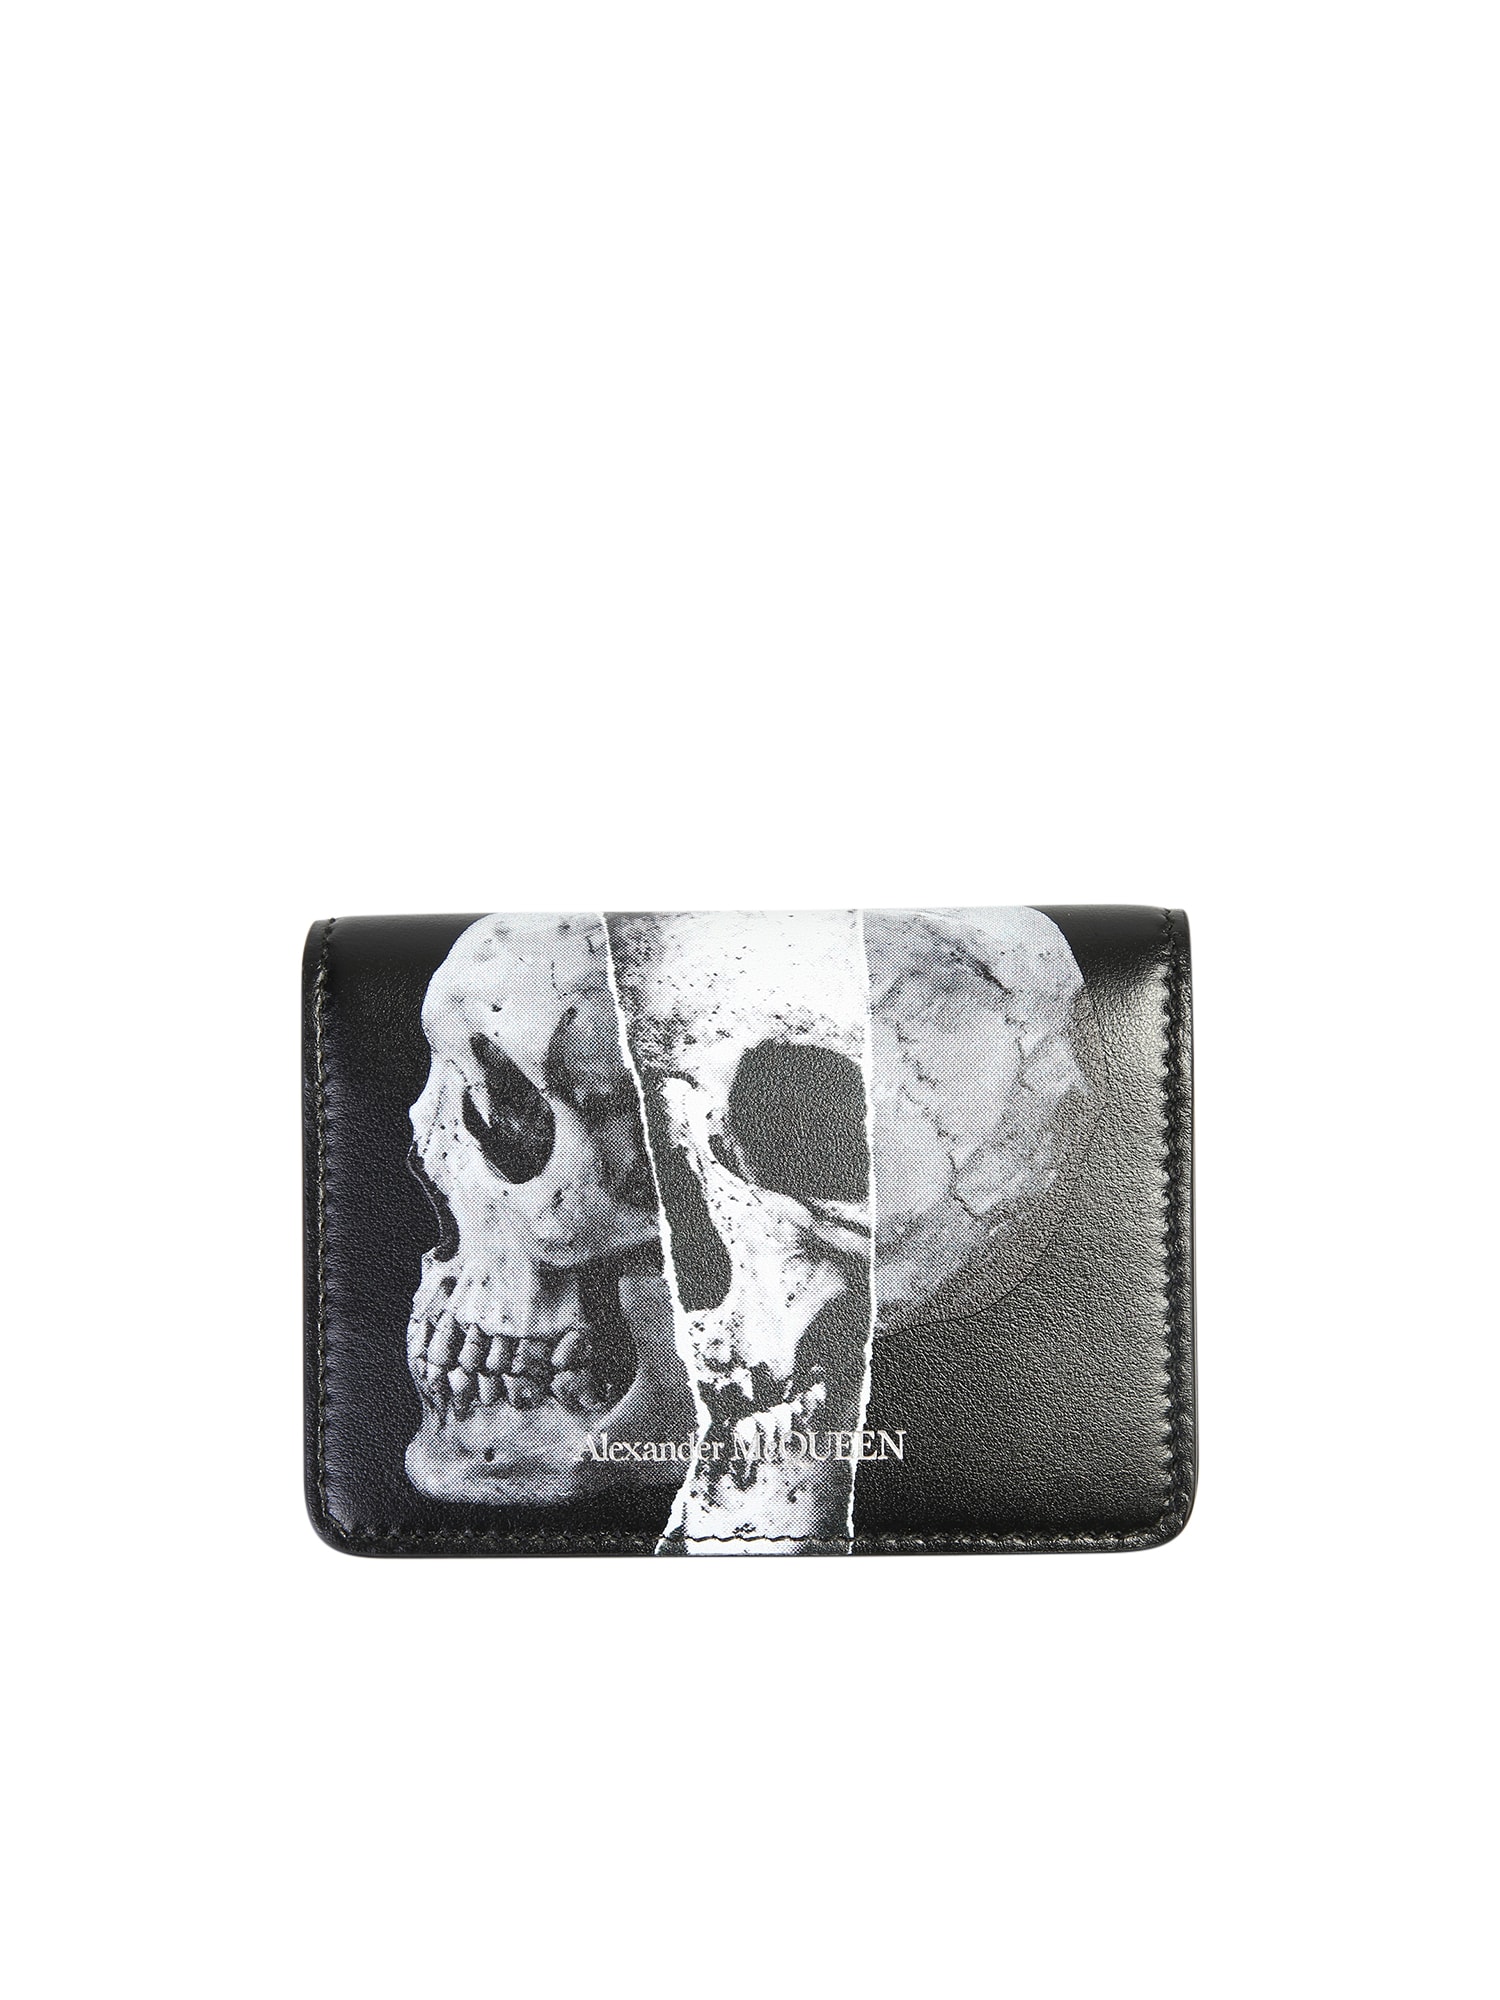 alexander mcqueen black skull card holder